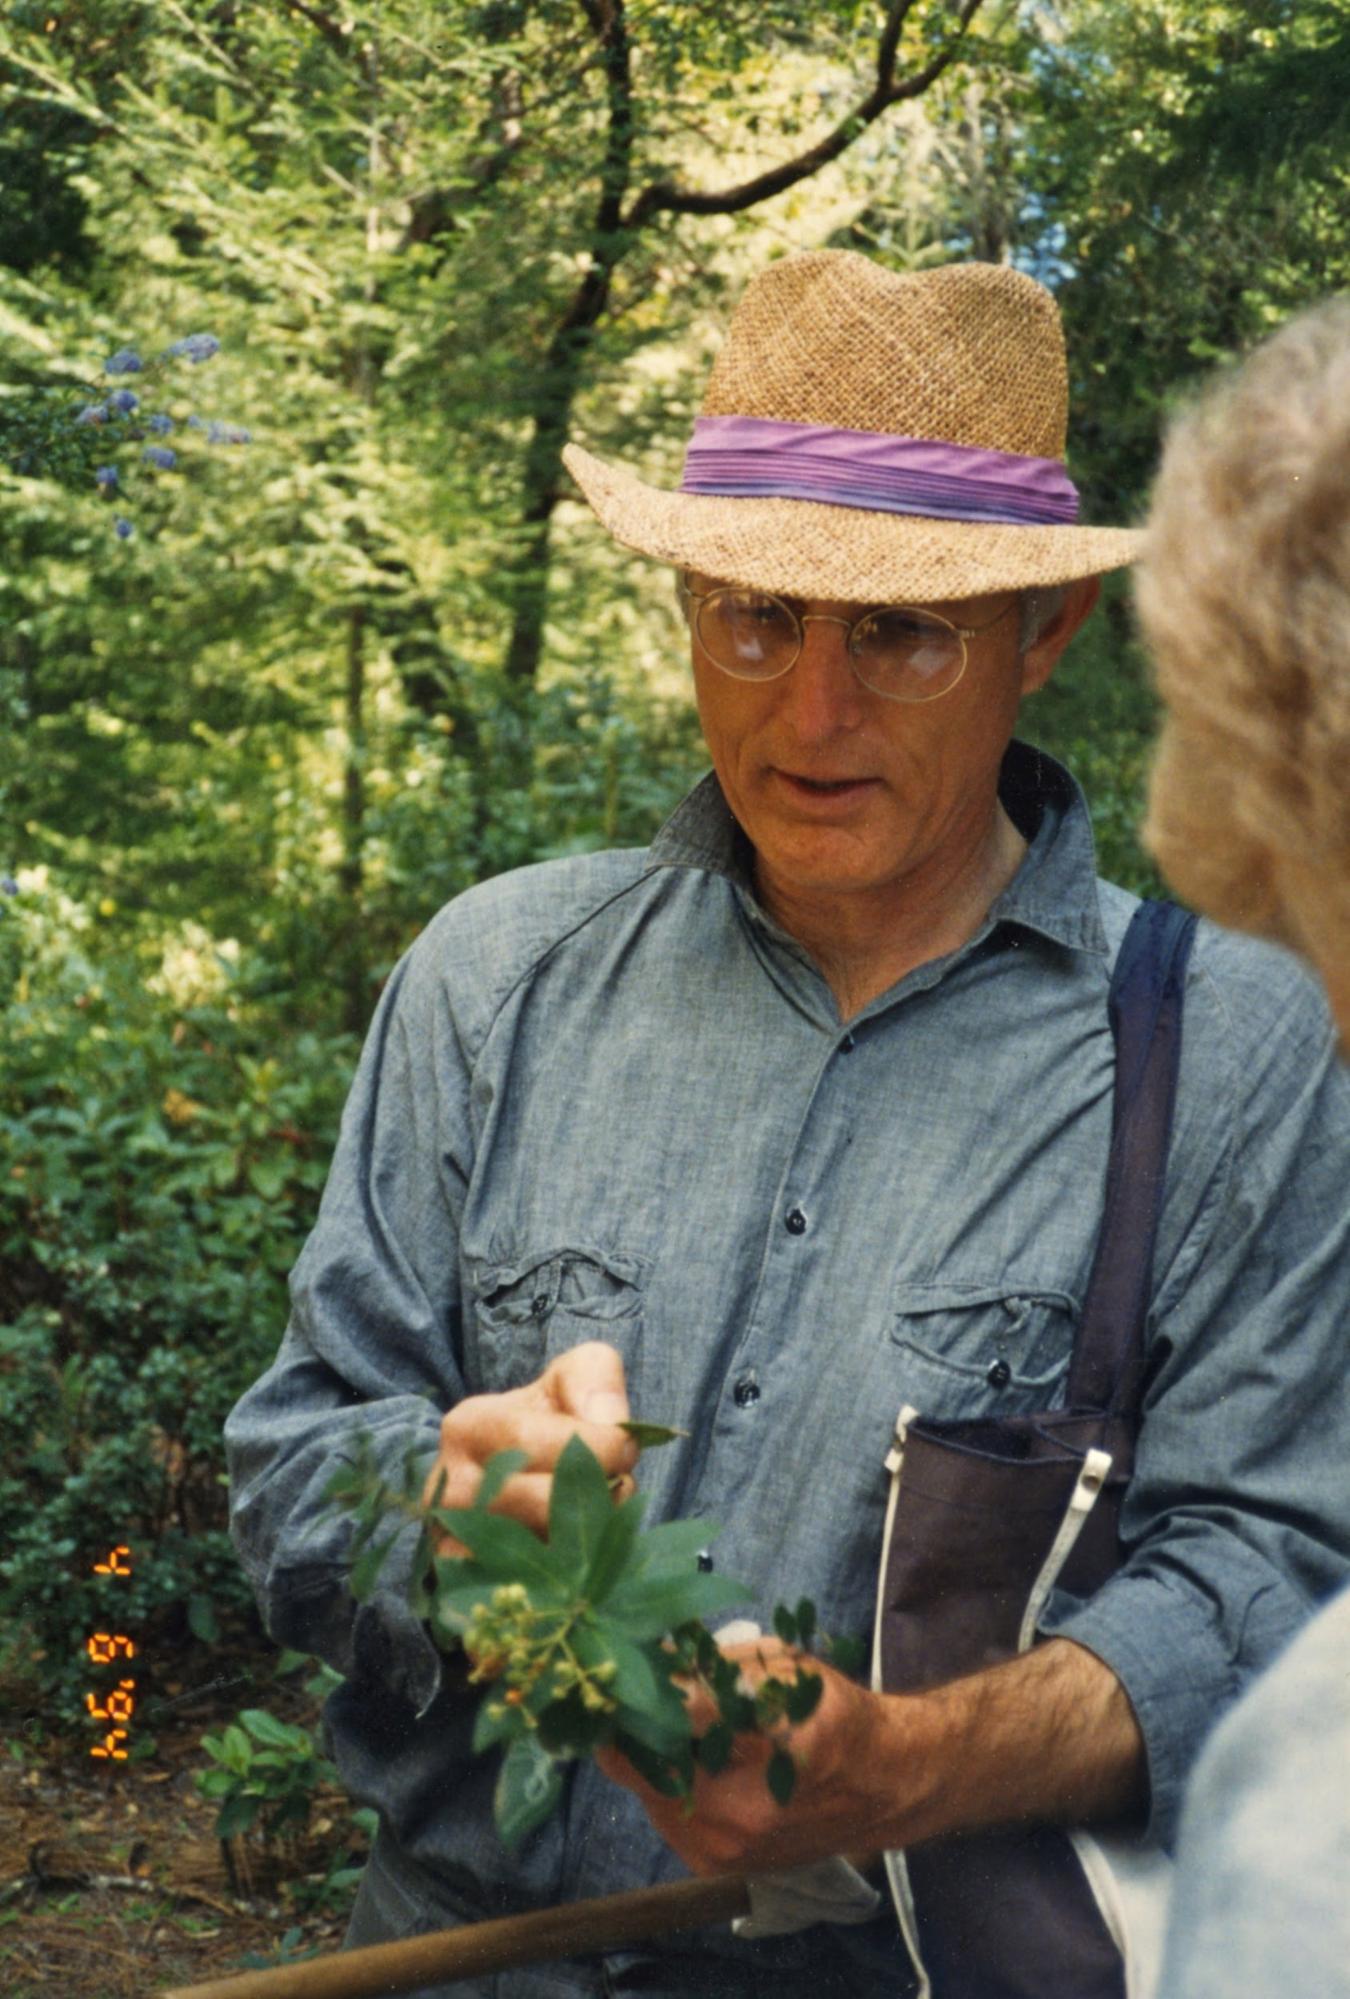 randy morgan examining a plant